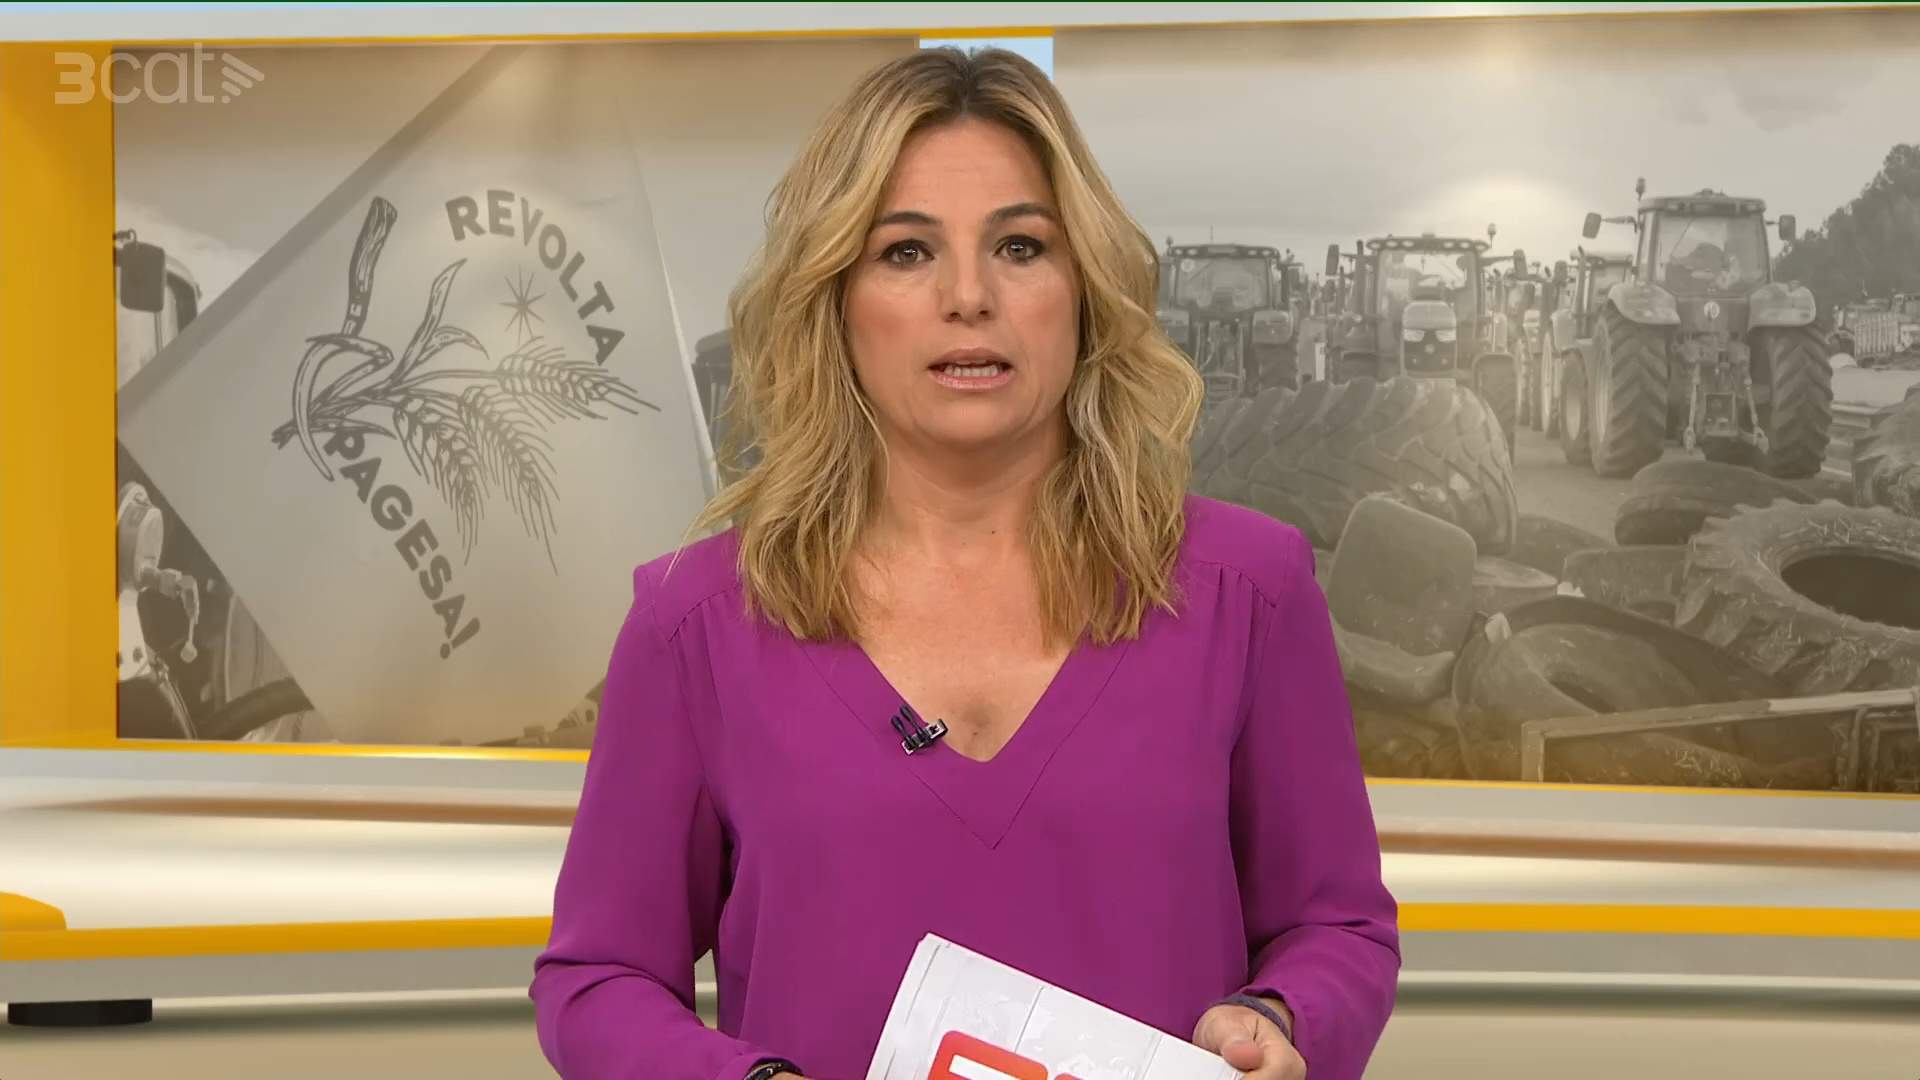 Núria Solé, de baja en TV3 mes y medio: ponen a dos presentadores de fuera del TN